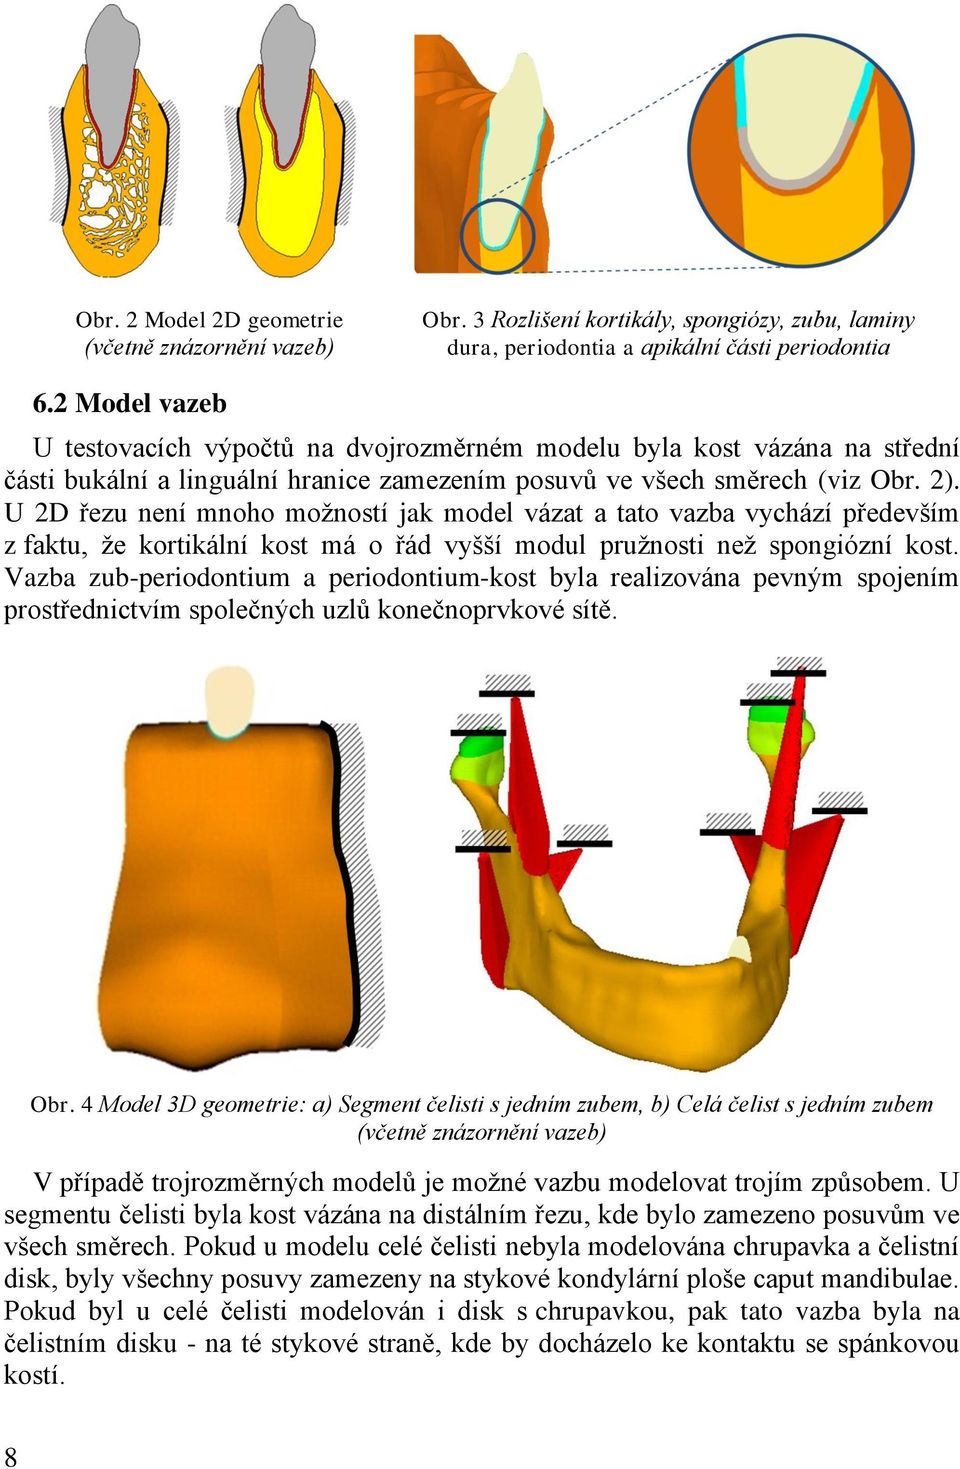 U 2D řezu není mnoho moţností jak model vázat a tato vazba vychází především z faktu, ţe kortikální kost má o řád vyšší modul pruţnosti neţ spongiózní kost.